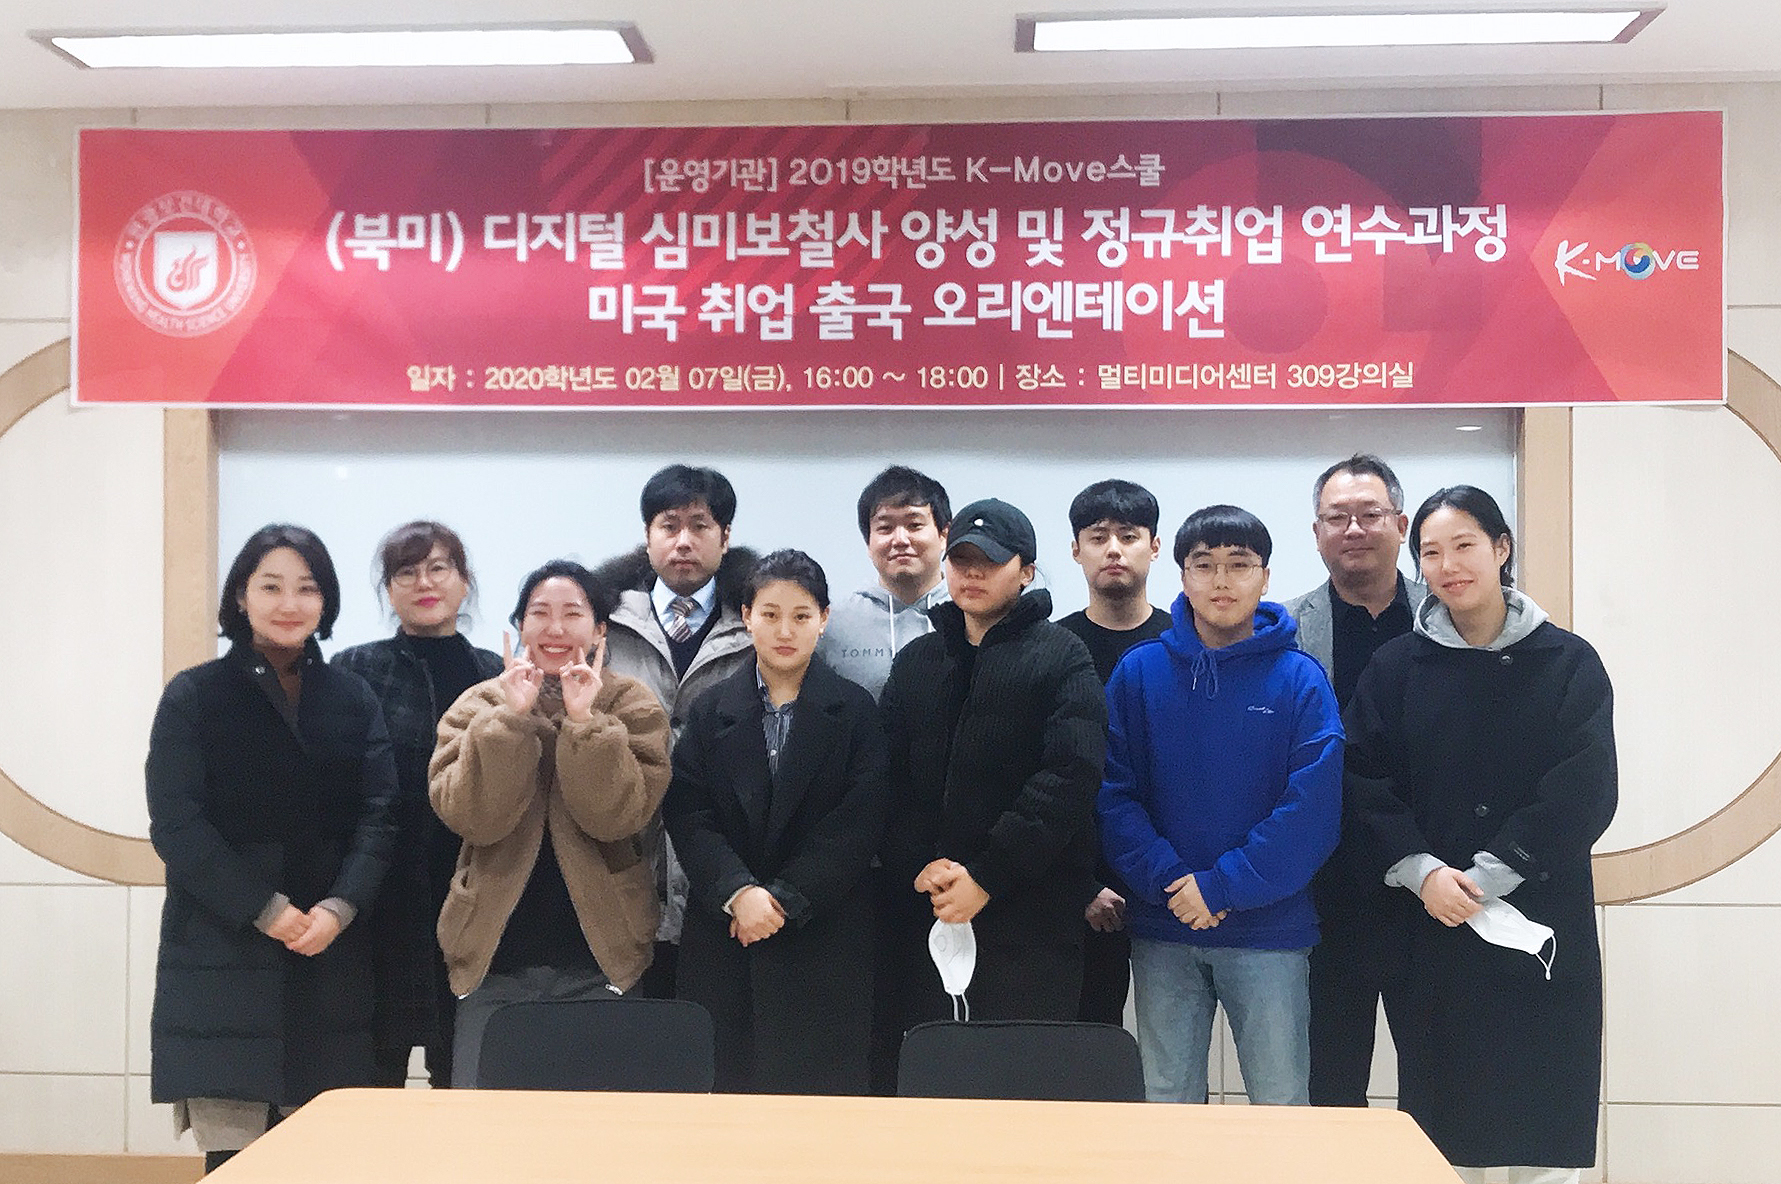 원광보건대학교 K-Move스쿨 북미 과정 참여 학생들(치기공과)